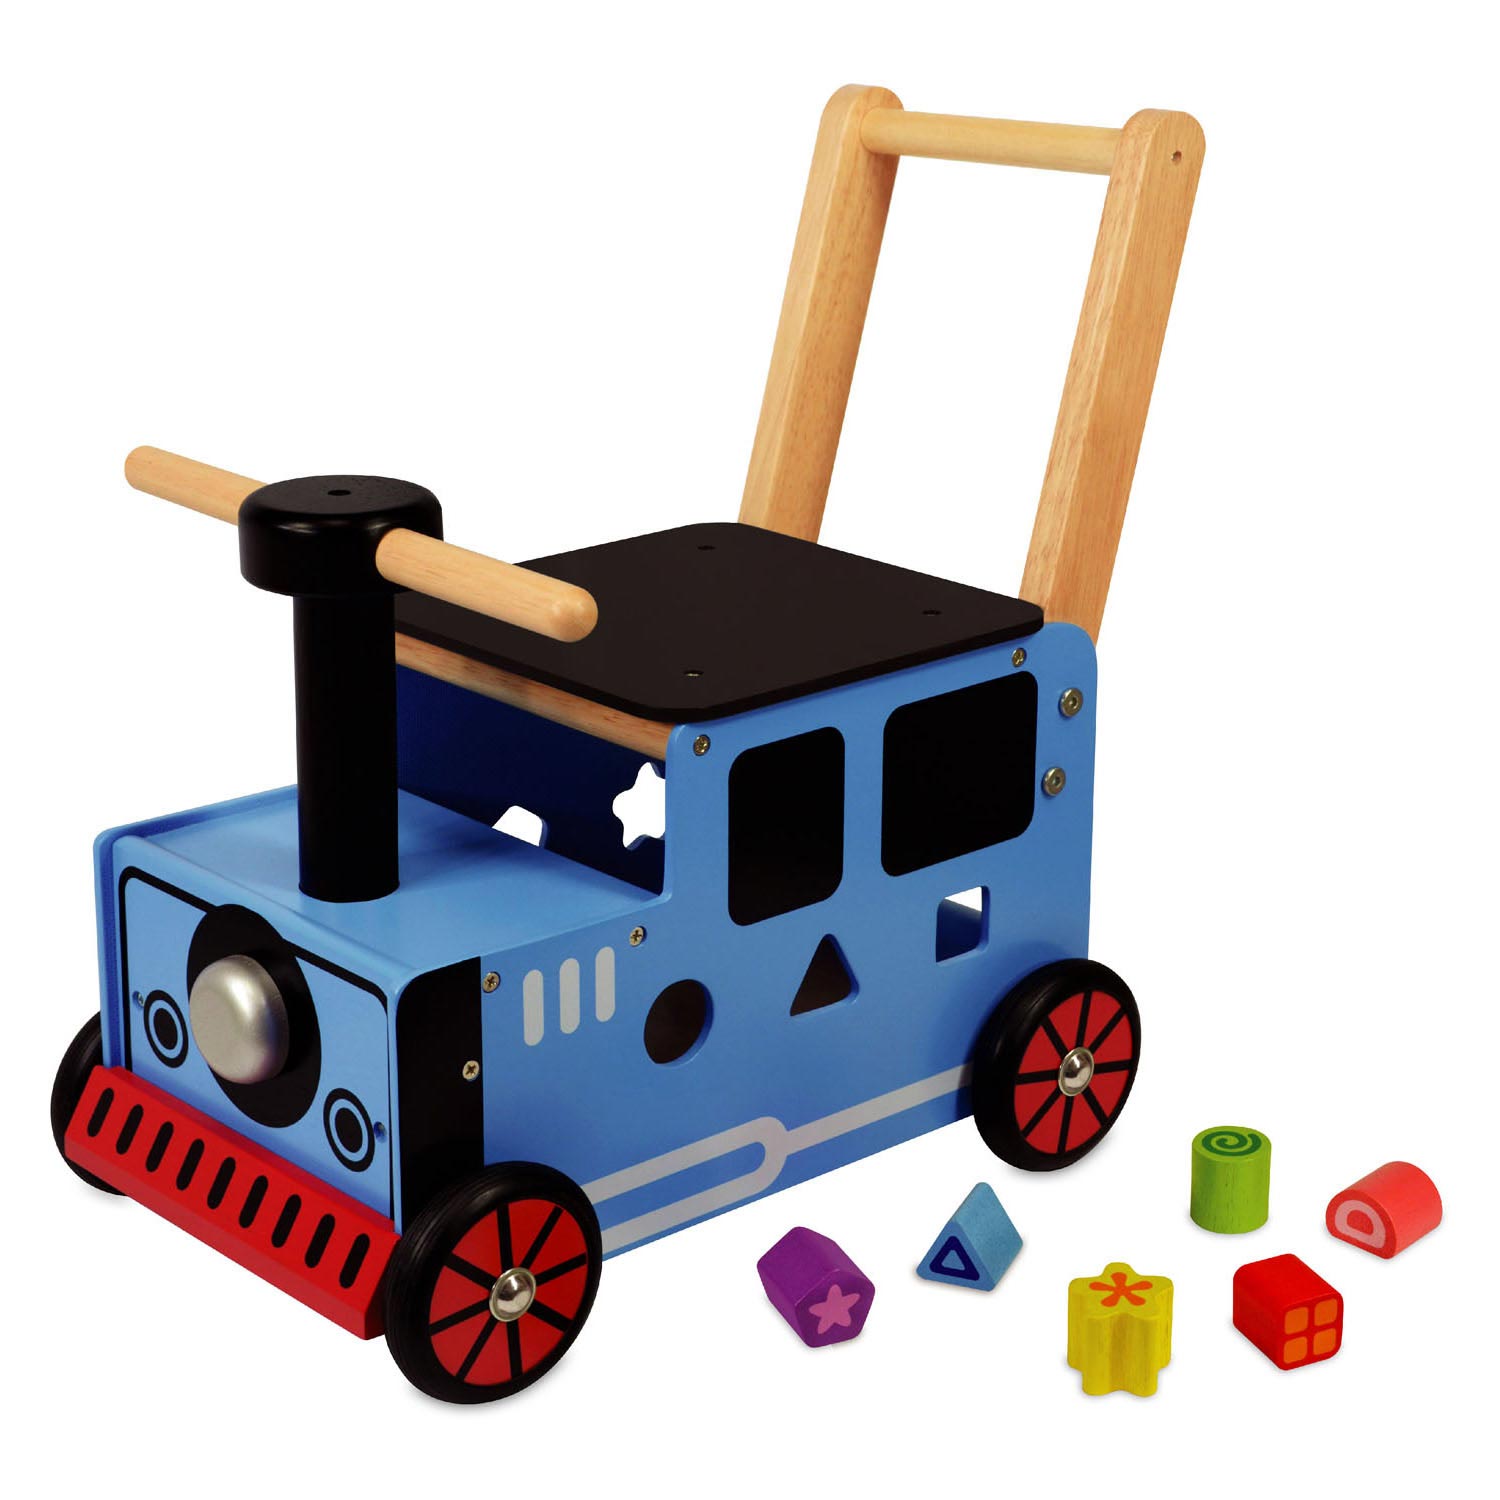 Integratie Gang Uitreiken Im Toy Loop- en Duwwagen Trein online kopen? | Lobbes Speelgoed